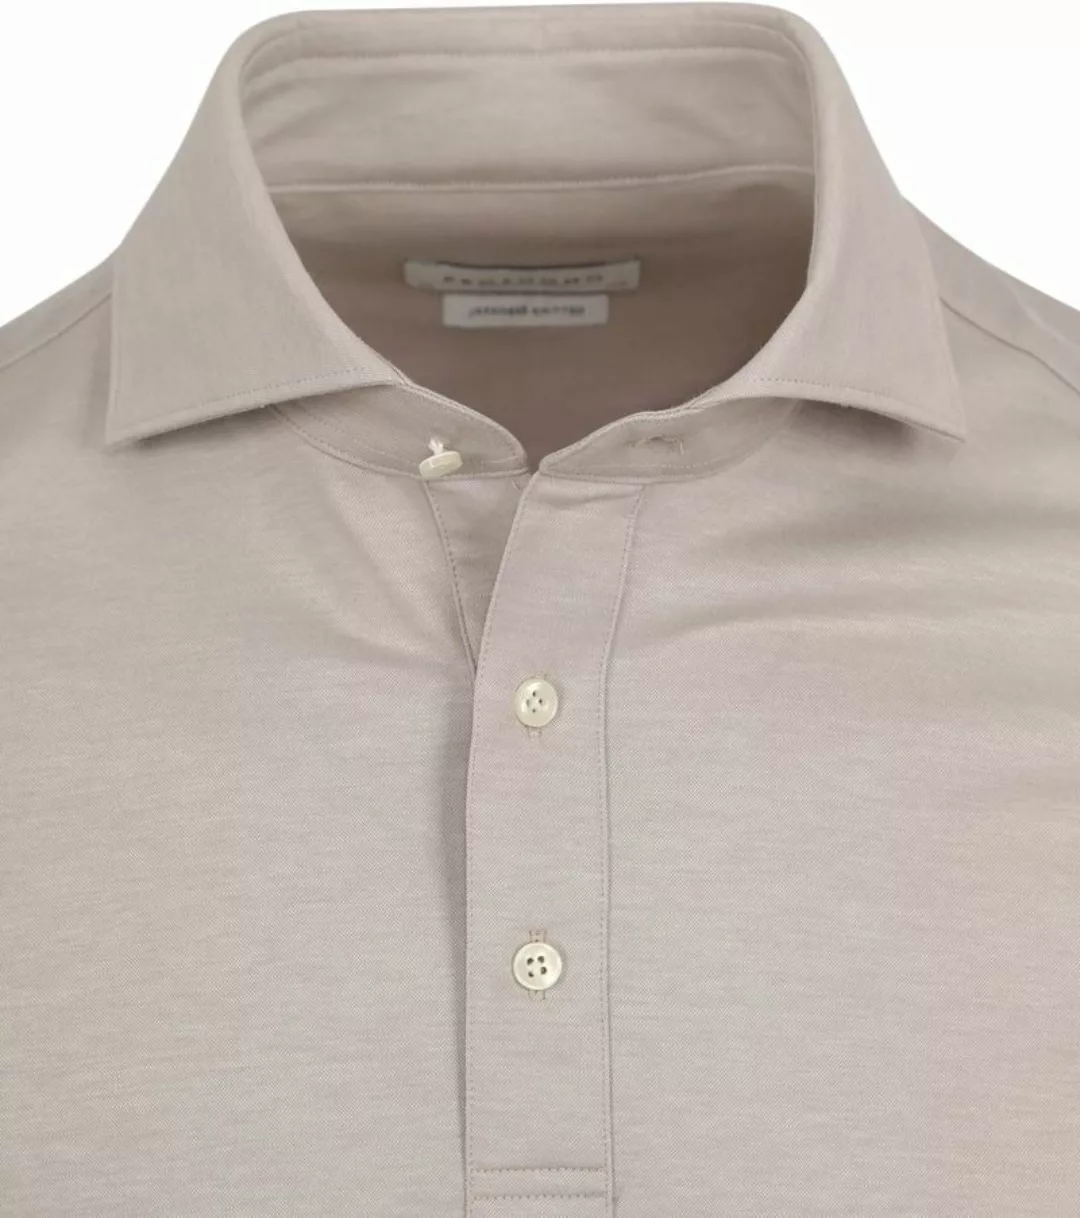 Profuomo Camiche Poloshirt Beige - Größe 44 günstig online kaufen